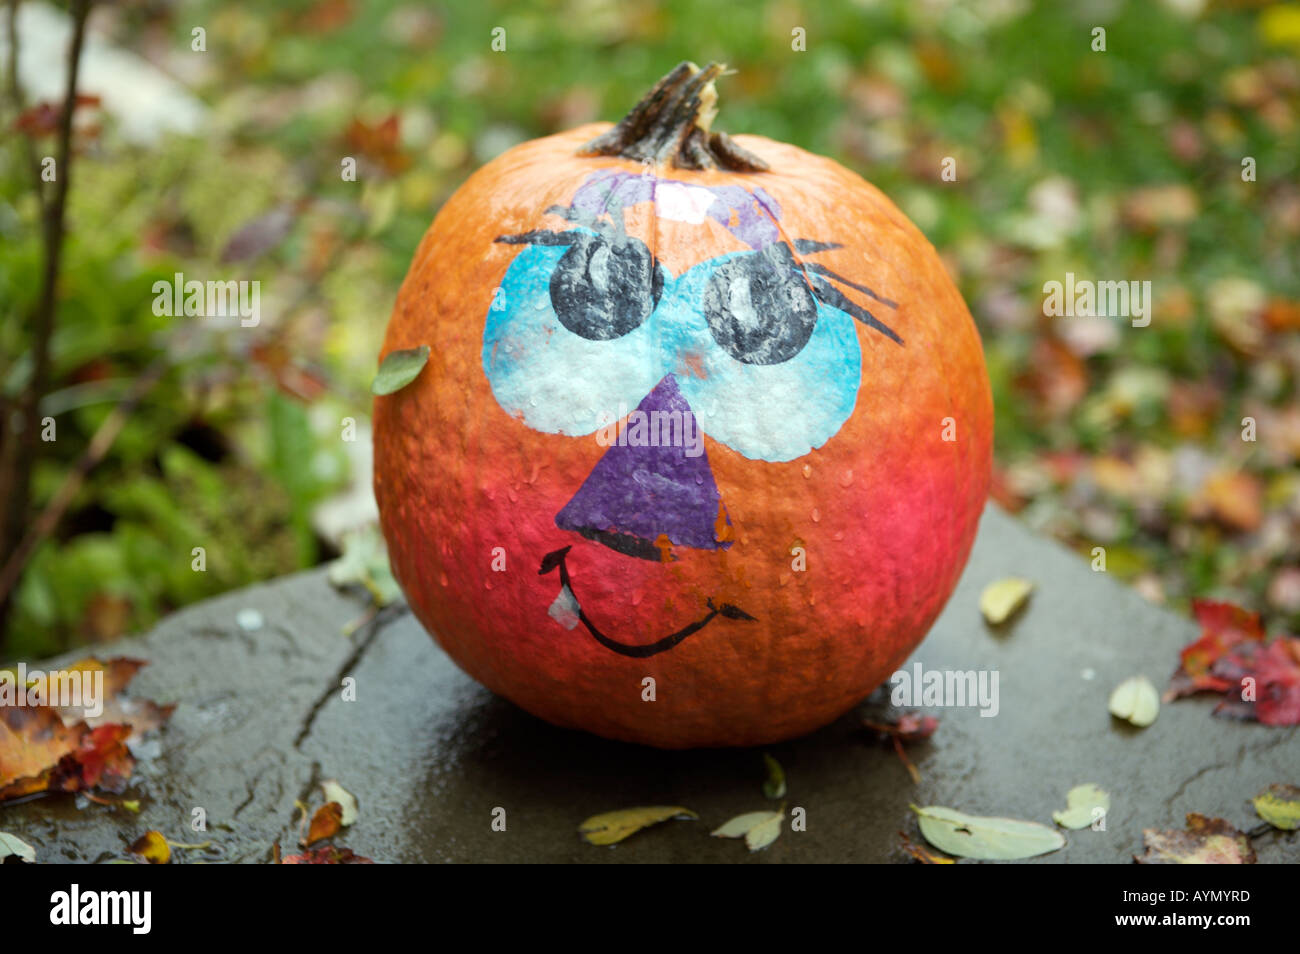 Zucca di Halloween nel prossimo autunno con il dipinto di faccia buffa Foto Stock